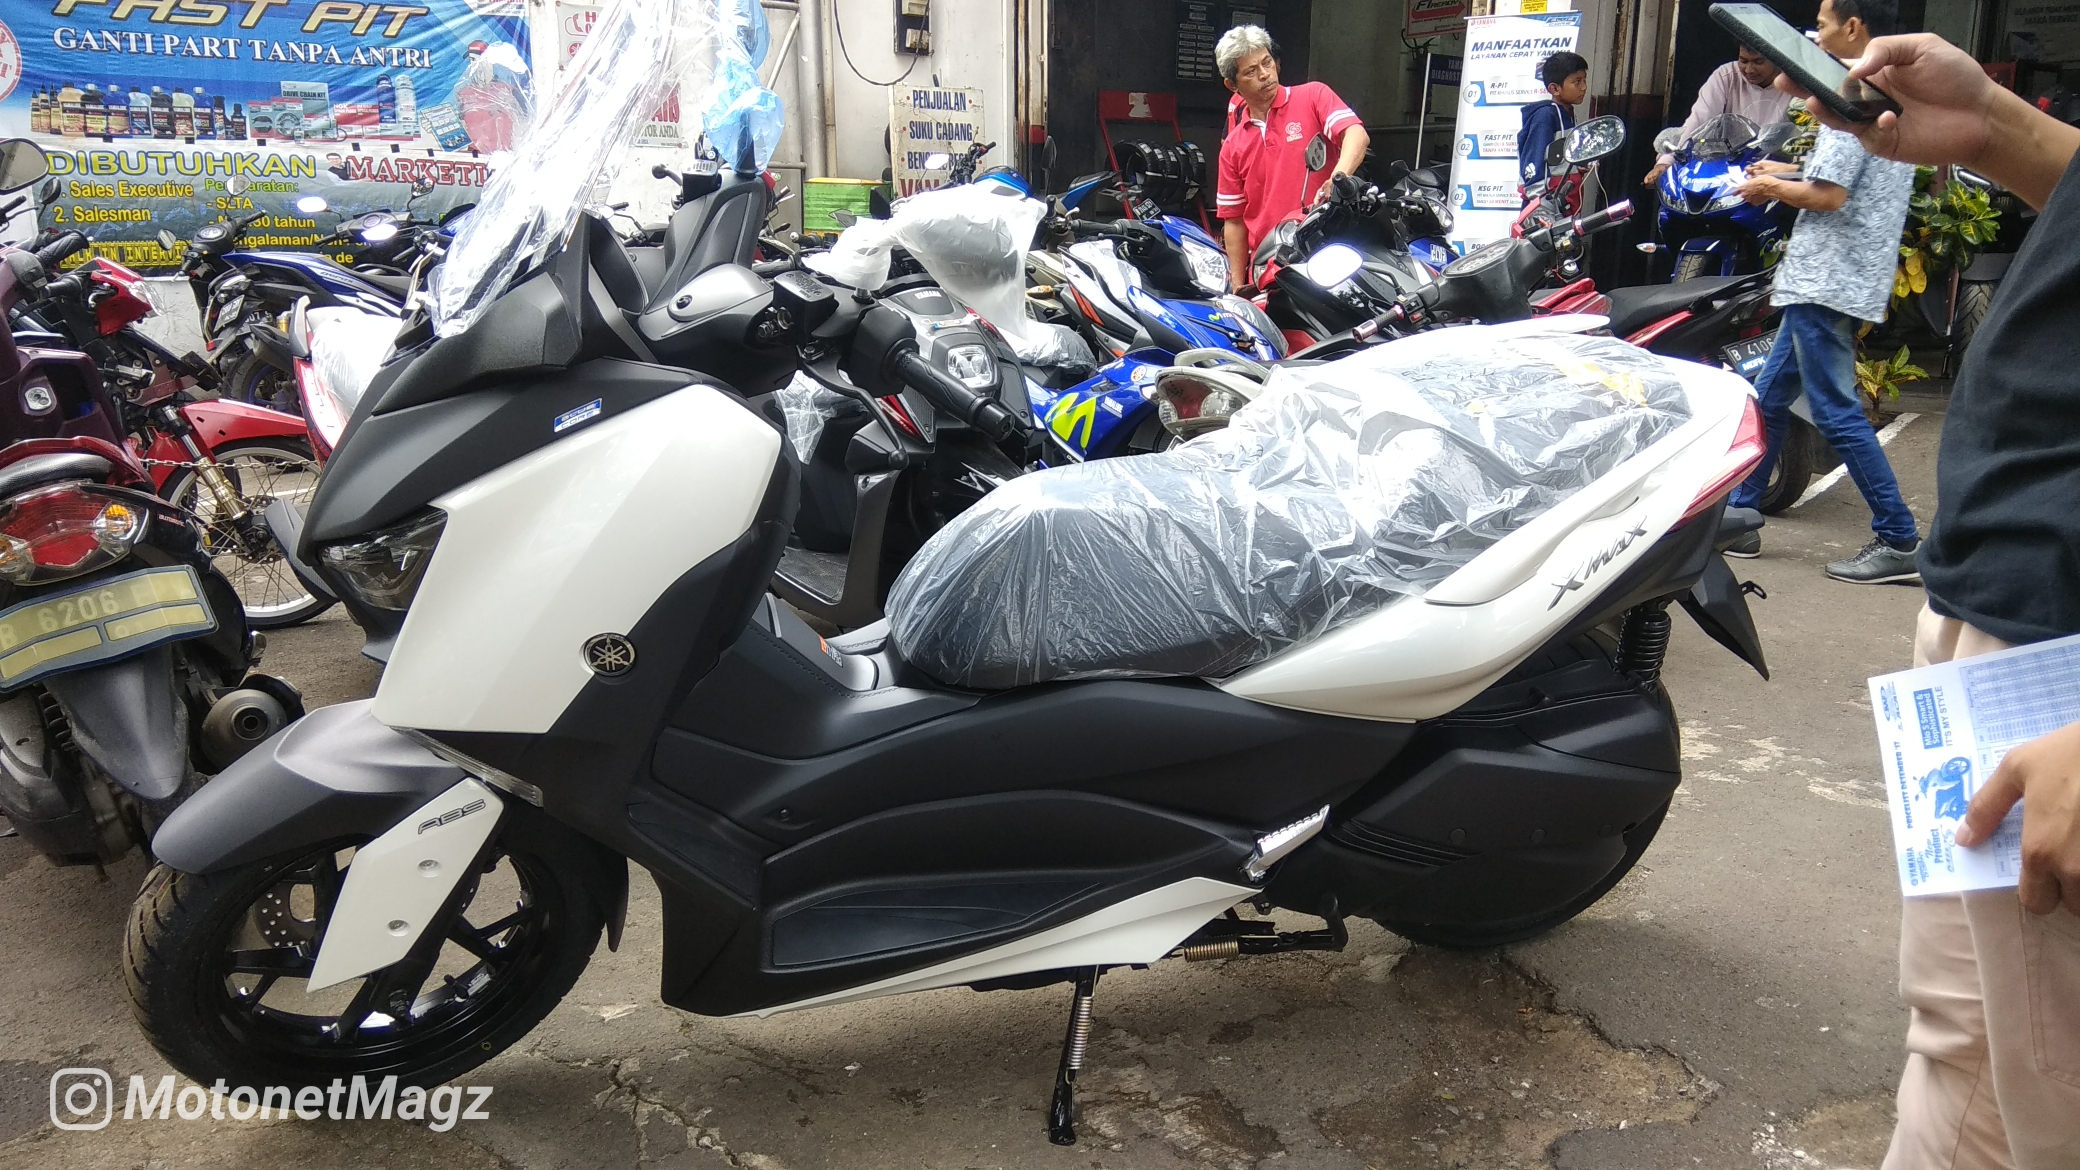 Berita, Harga Yamaha X-Max 250 cicilan: Calo Meracuni Inden Online Yamaha X-Max 250